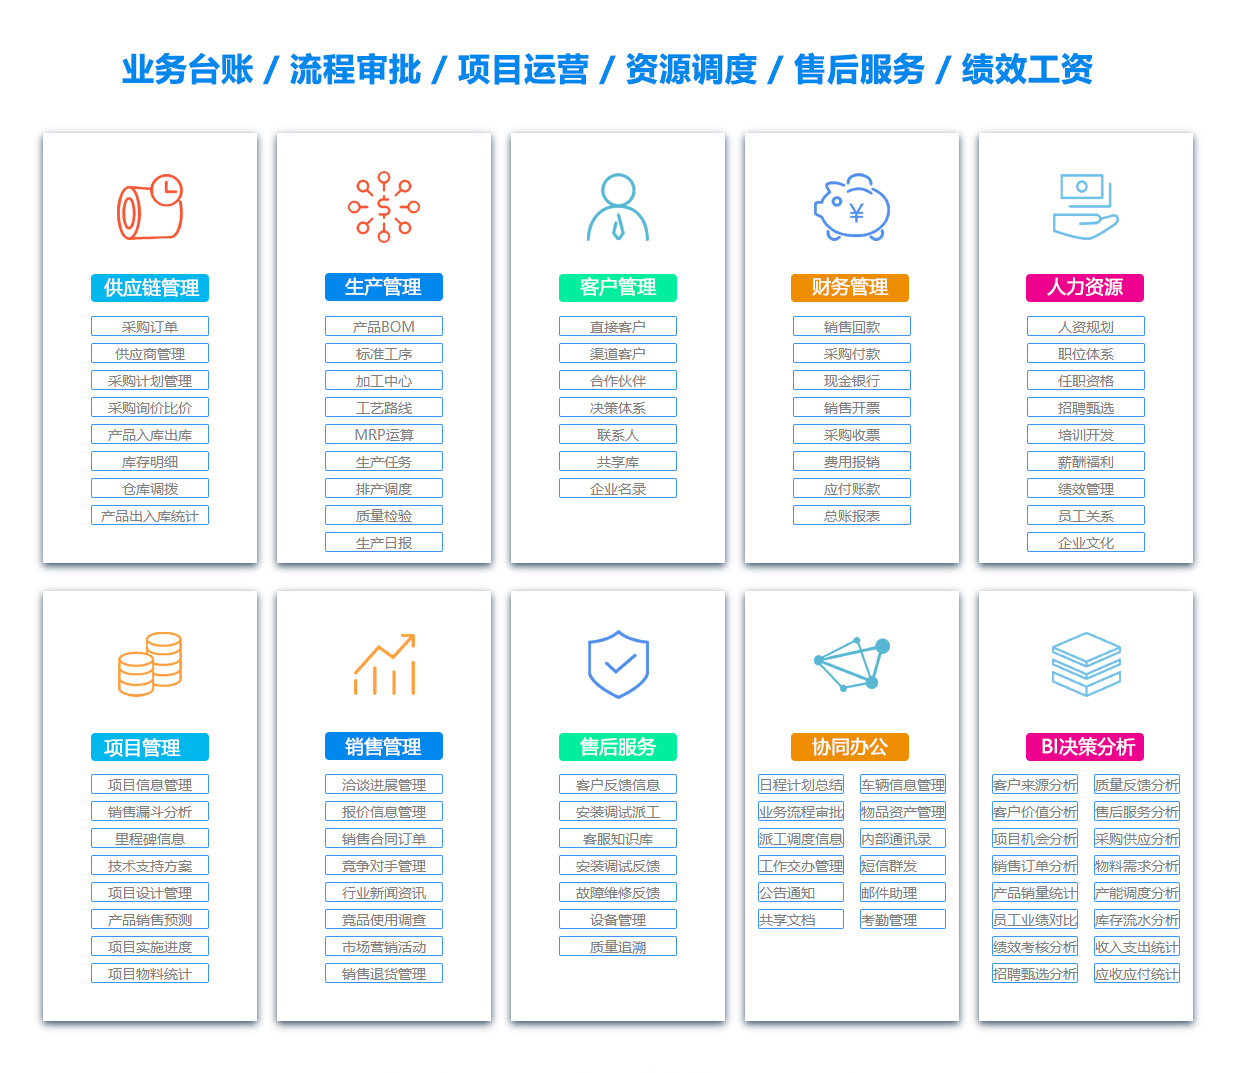 广州供应链软件